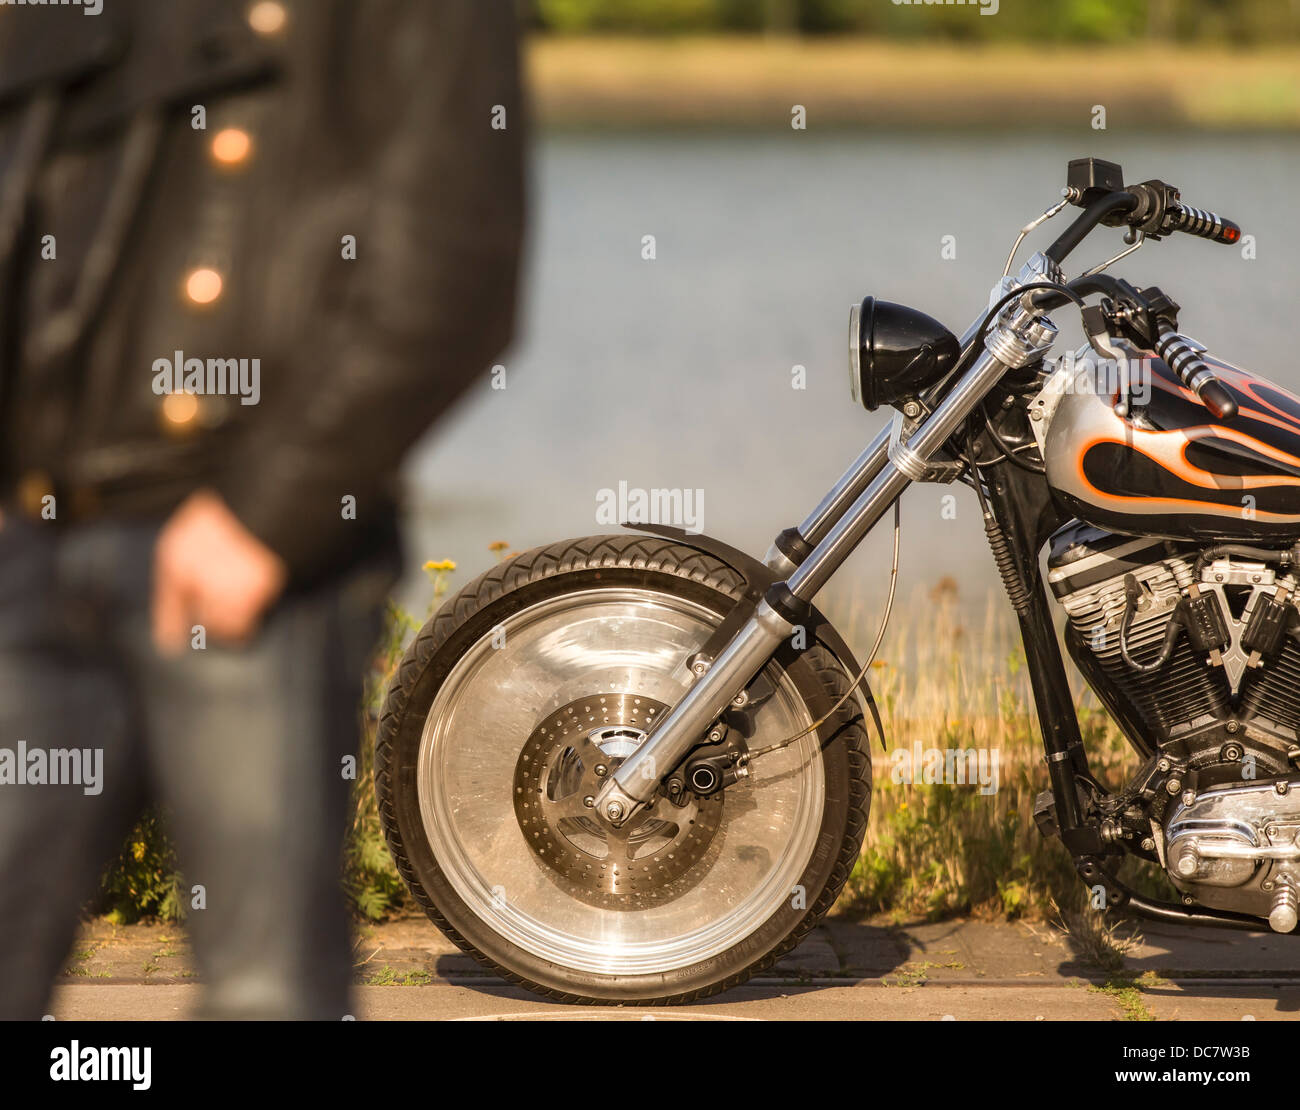 Jeune homme portant des vêtements en cuir avec sa Harley Davidson Banque D'Images